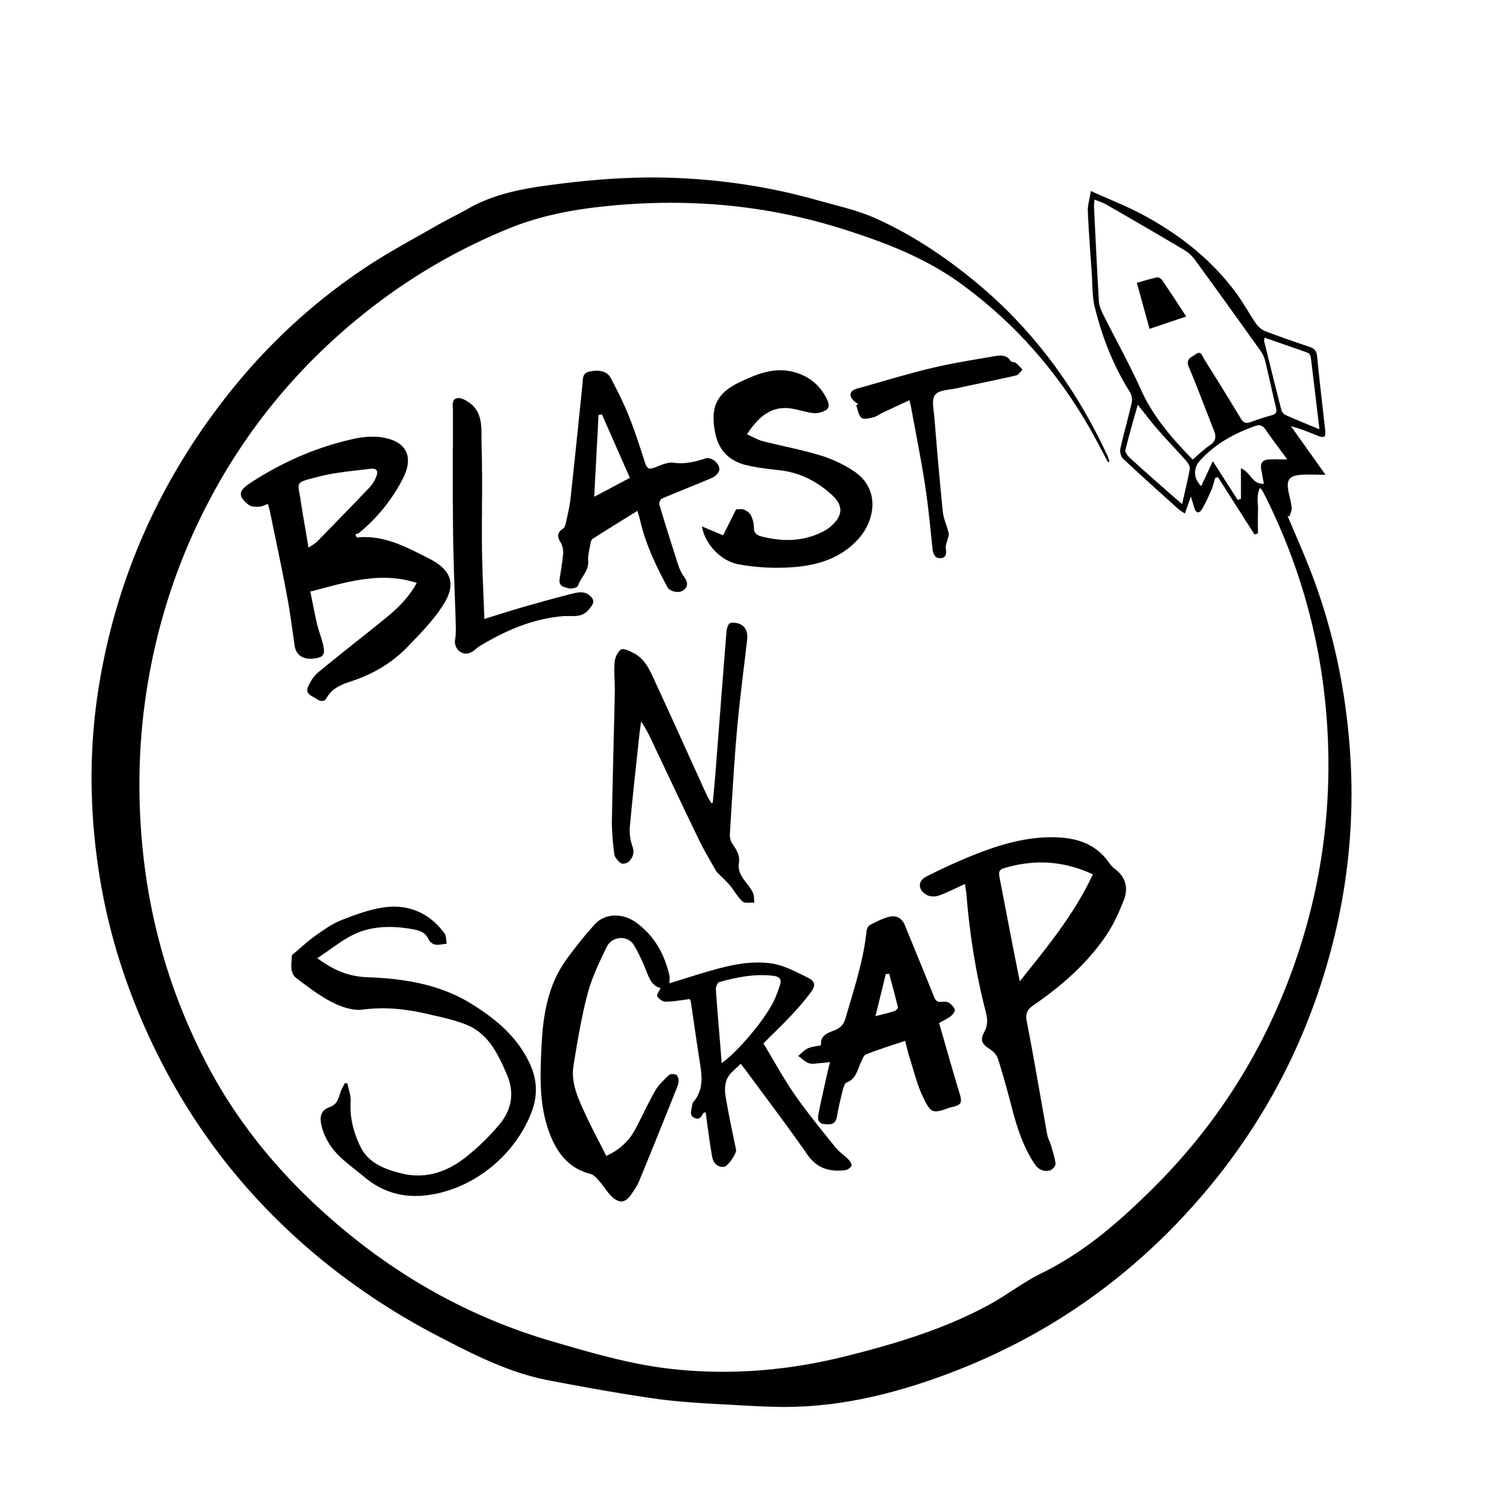 Blast N Scrap